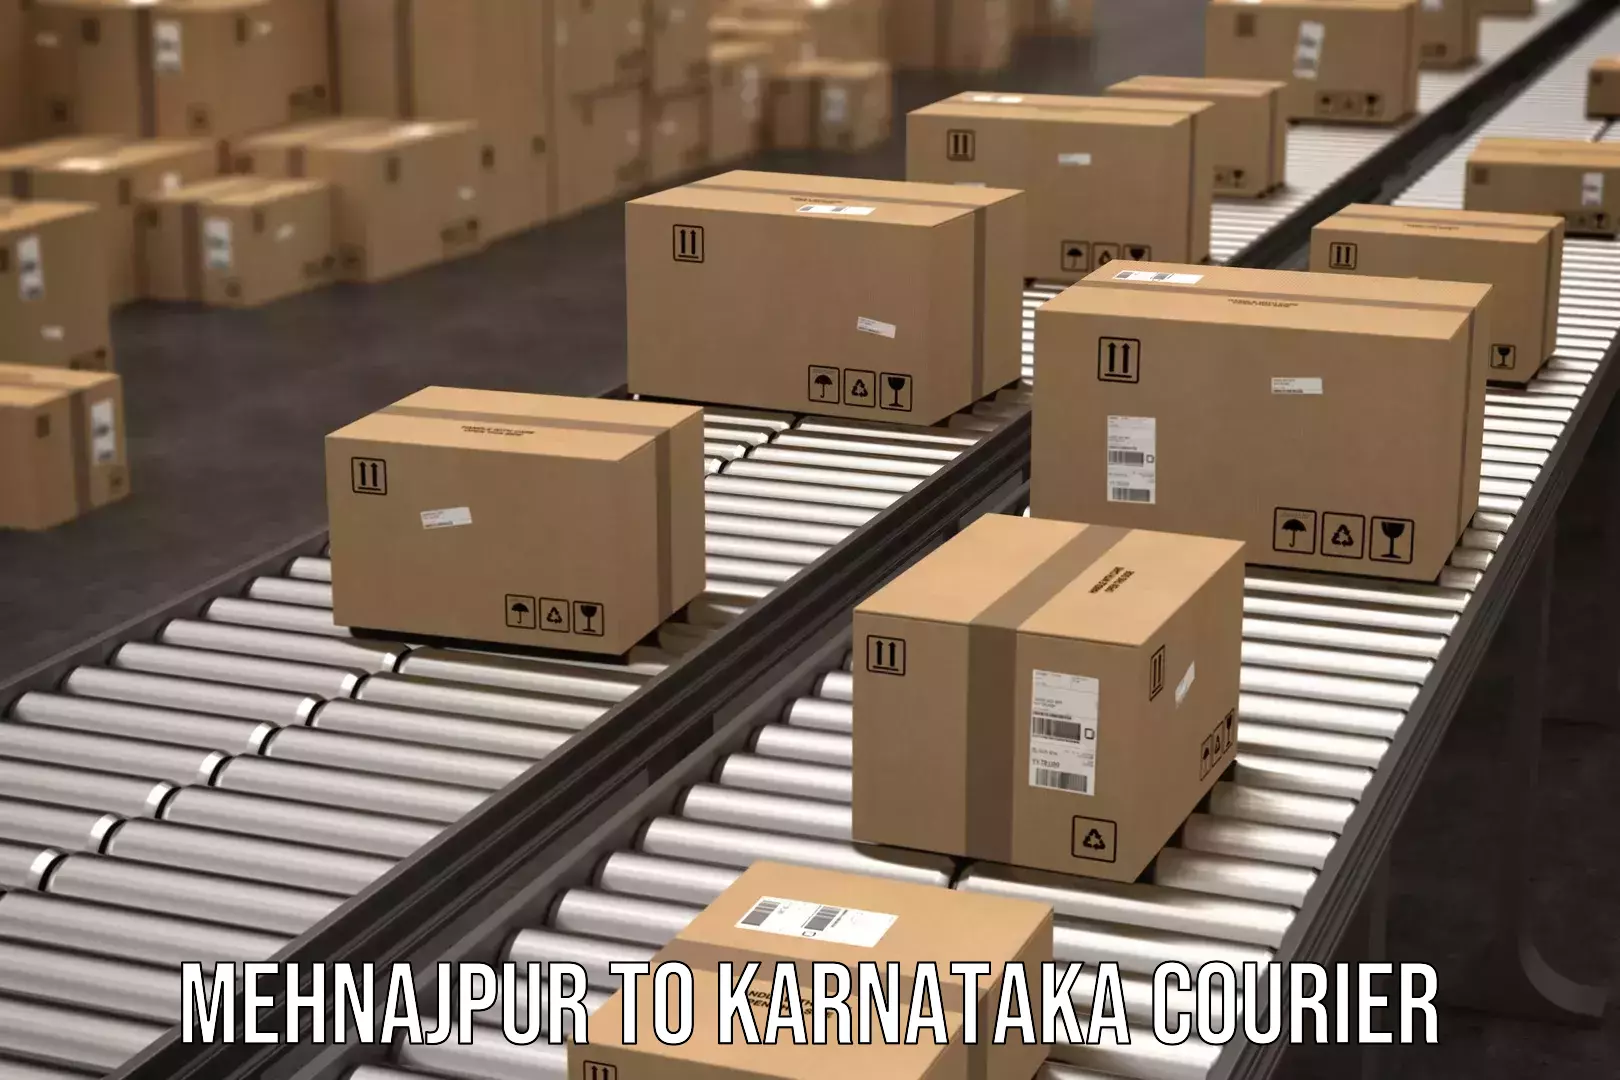 Efficient cargo services Mehnajpur to Karnataka